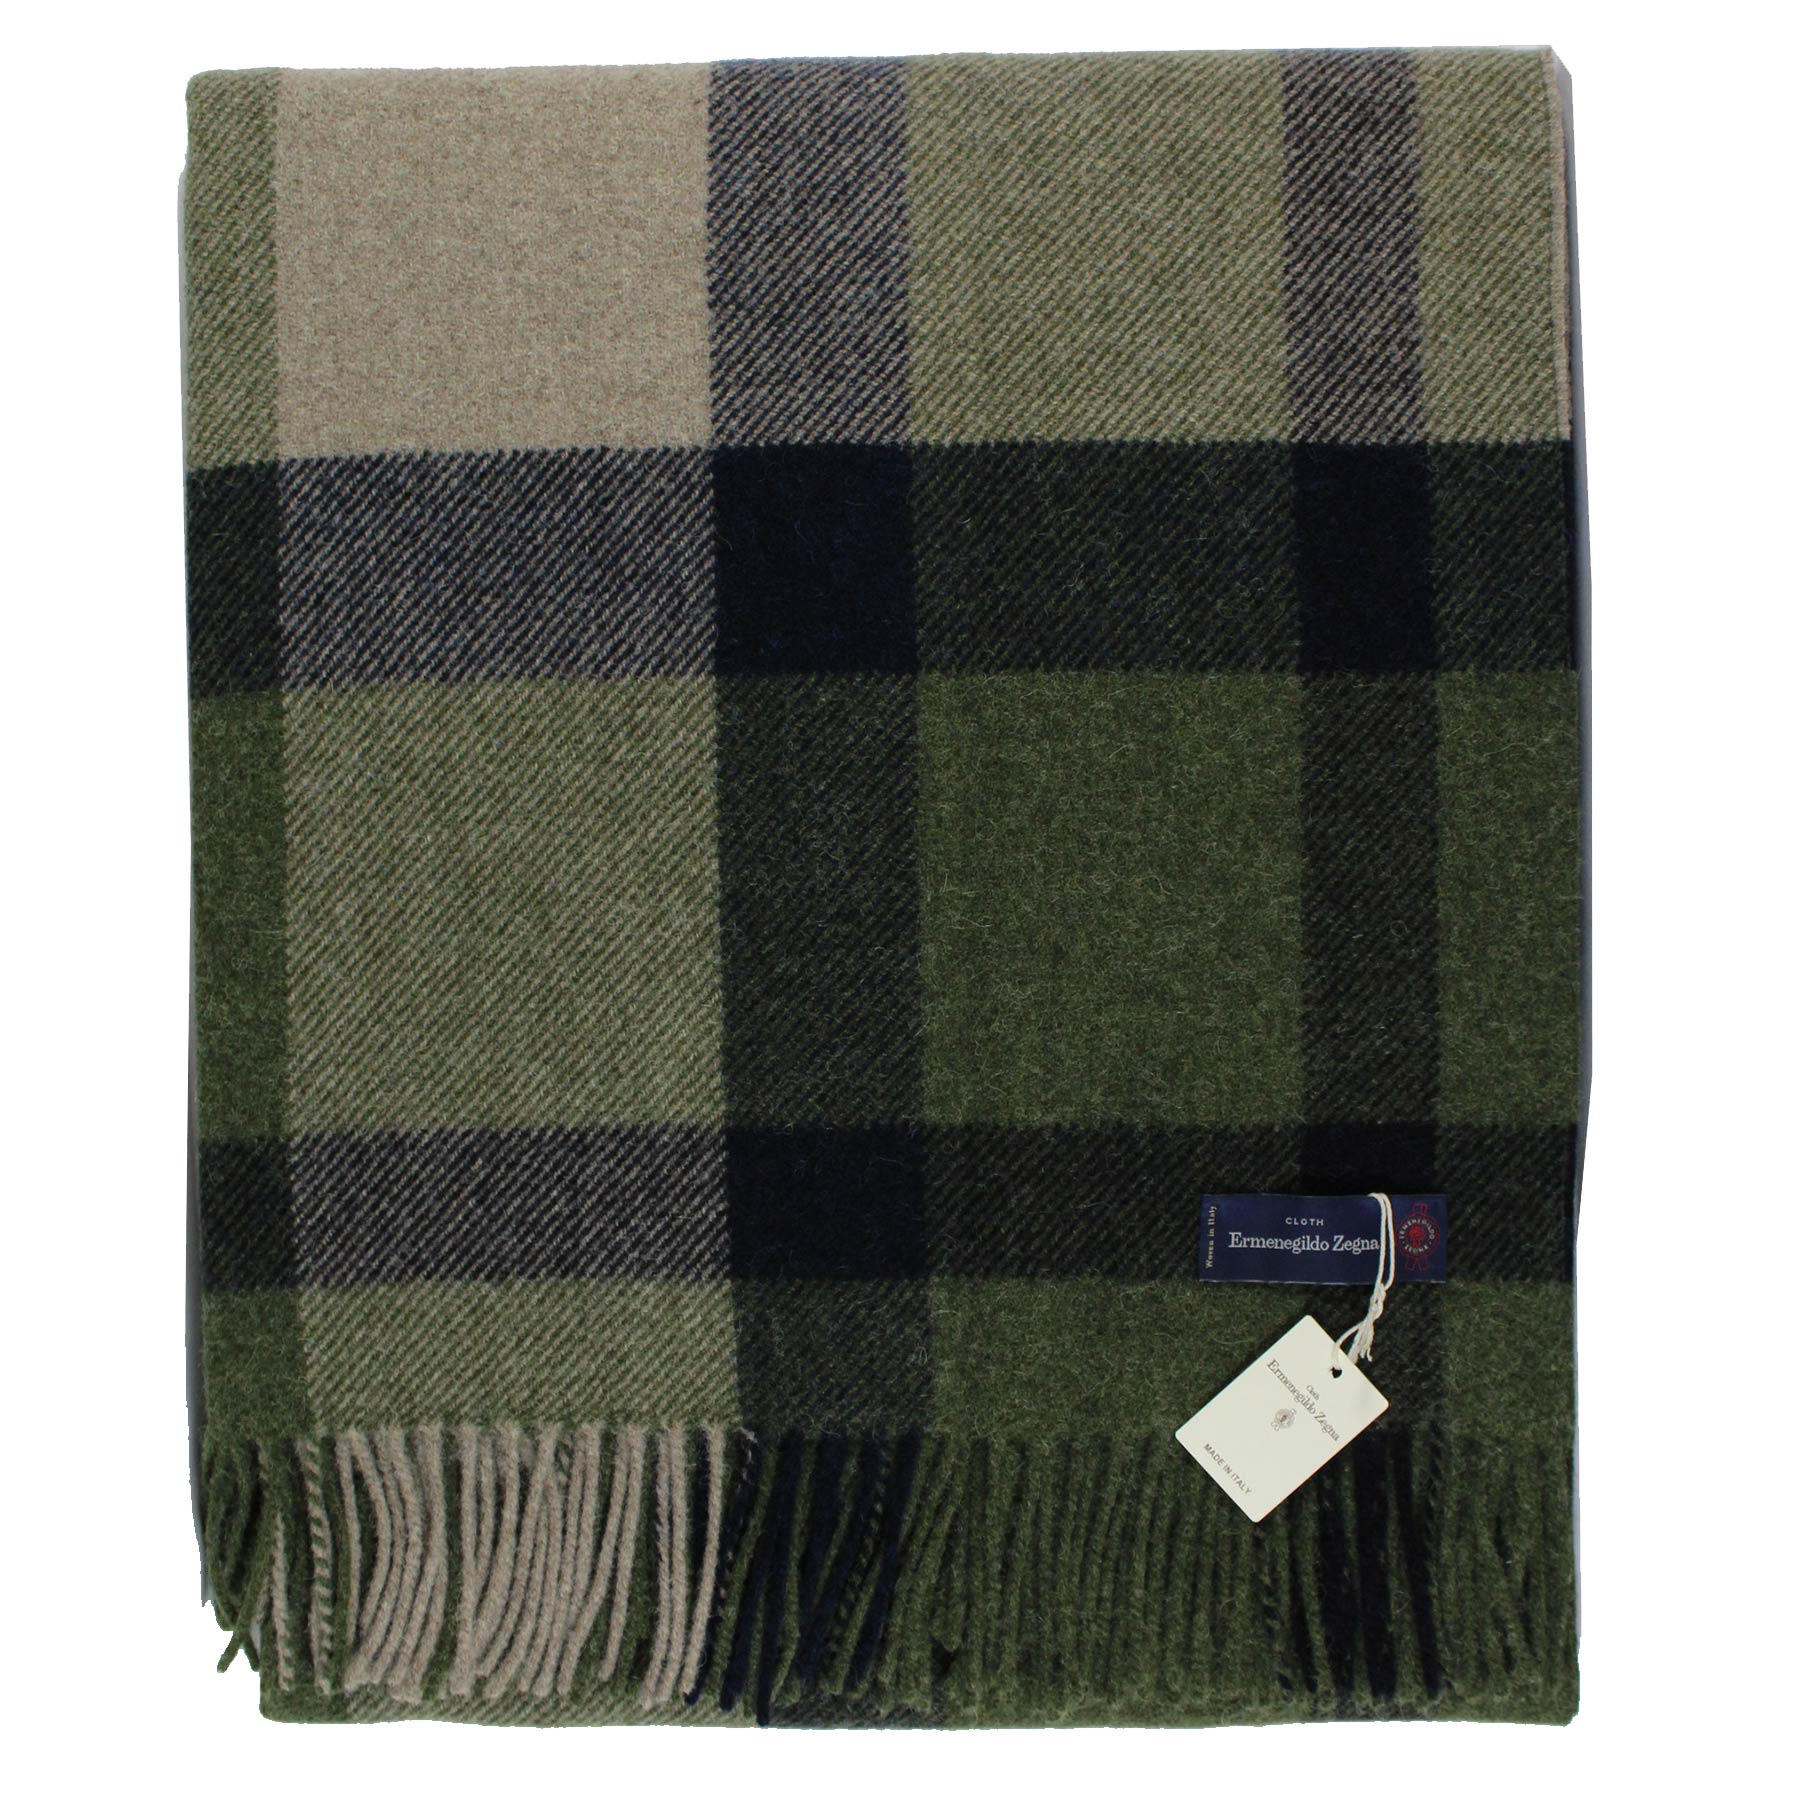 Ermenegildo Zegna Throw Blanket Green Plaid - Wool Alpaca Cashmere